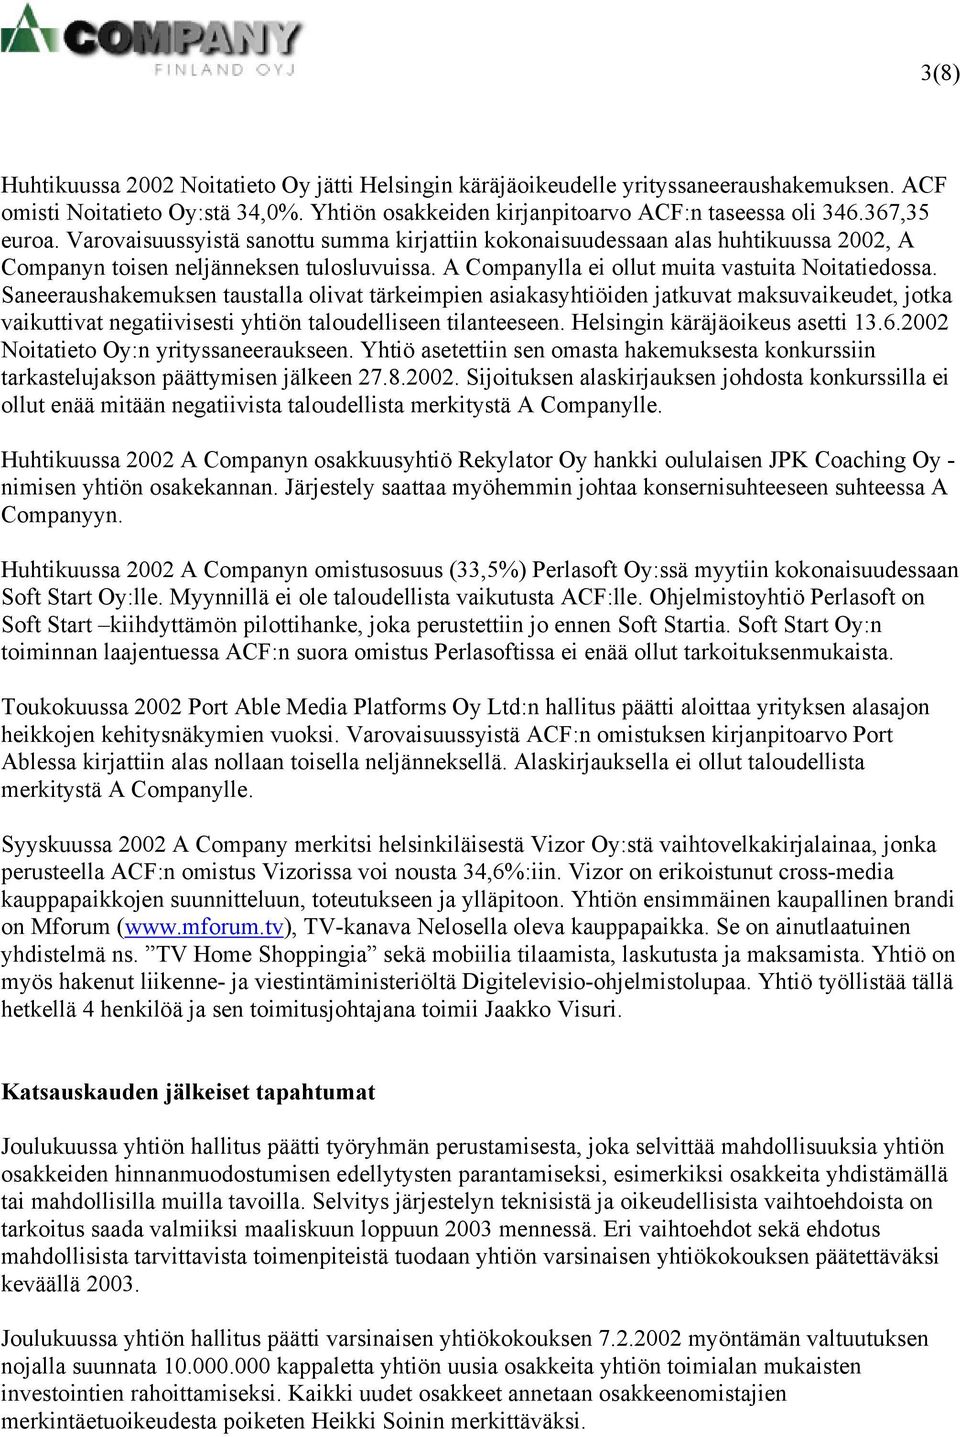 Saneeraushakemuksen taustalla olivat tärkeimpien asiakasyhtiöiden jatkuvat maksuvaikeudet, jotka vaikuttivat negatiivisesti yhtiön taloudelliseen tilanteeseen. Helsingin käräjäoikeus asetti 13.6.